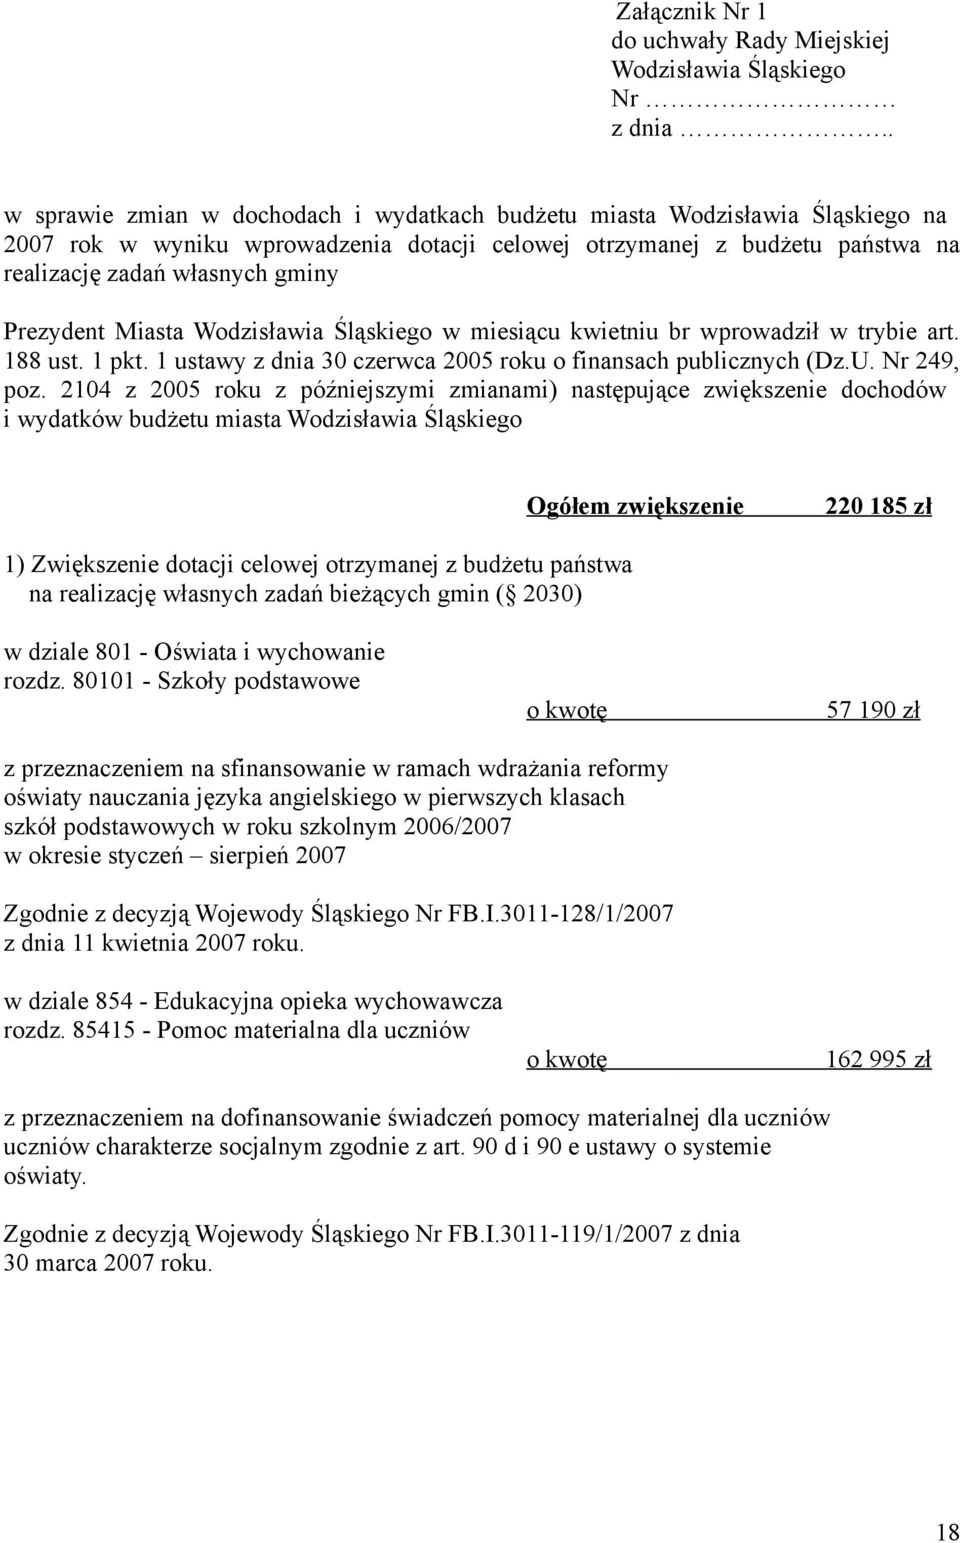 Prezydent Miasta Wodzisławia Śląskiego w miesiącu kwietniu br wprowadził w trybie art. 188 ust. 1 pkt. 1 ustawy z dnia 30 czerwca 2005 roku o finansach publicznych (Dz.U. Nr 249, poz.